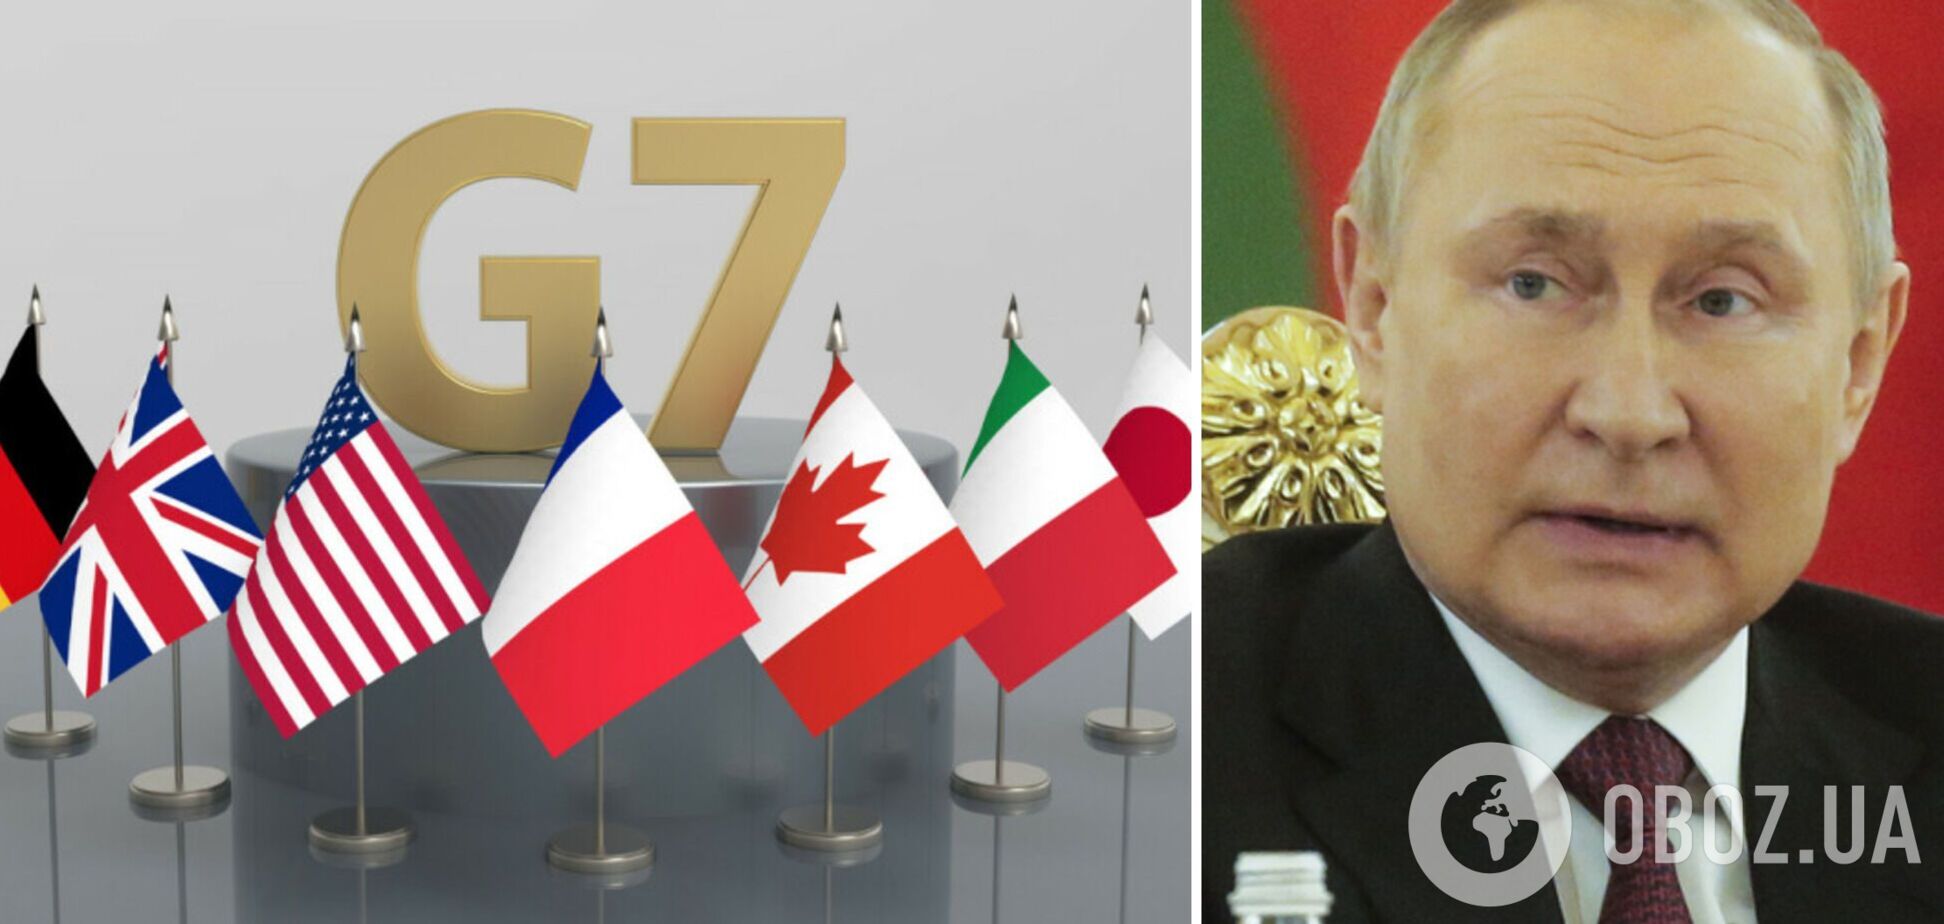 Мы привлечем Путина к ответственности: лидеры G7 выступили с общим заявлением по результатам саммита